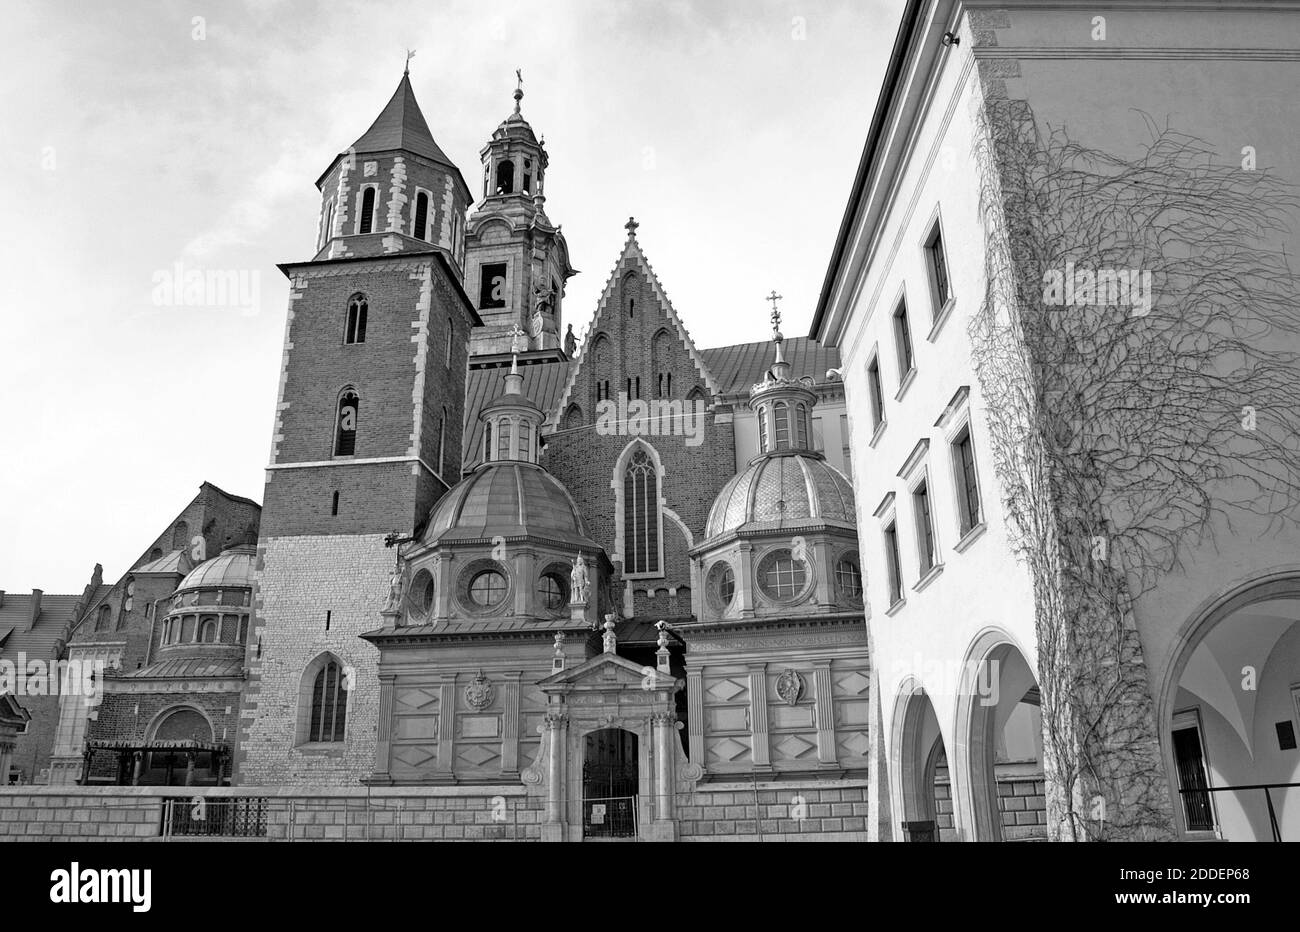 Le complexe du château royal de Wawel, dans la vieille ville de Cracovie, en Pologne, est un symbole de l'Etat polonais et de son patrimoine culturel. Construit aux XIIIe et XIVe siècles, le château comprend le Trésor de la Couronne polonaise, la chapelle royale, la cathédrale de Wawel, la chapelle de Sigismund et la résidence royale. L'architecture du château est un mélange de romane, de gothique, de Renaissance et de baroque ancien contribuant à sa désignation de site du patrimoine mondial de l'UNESCO en 1978. Banque D'Images